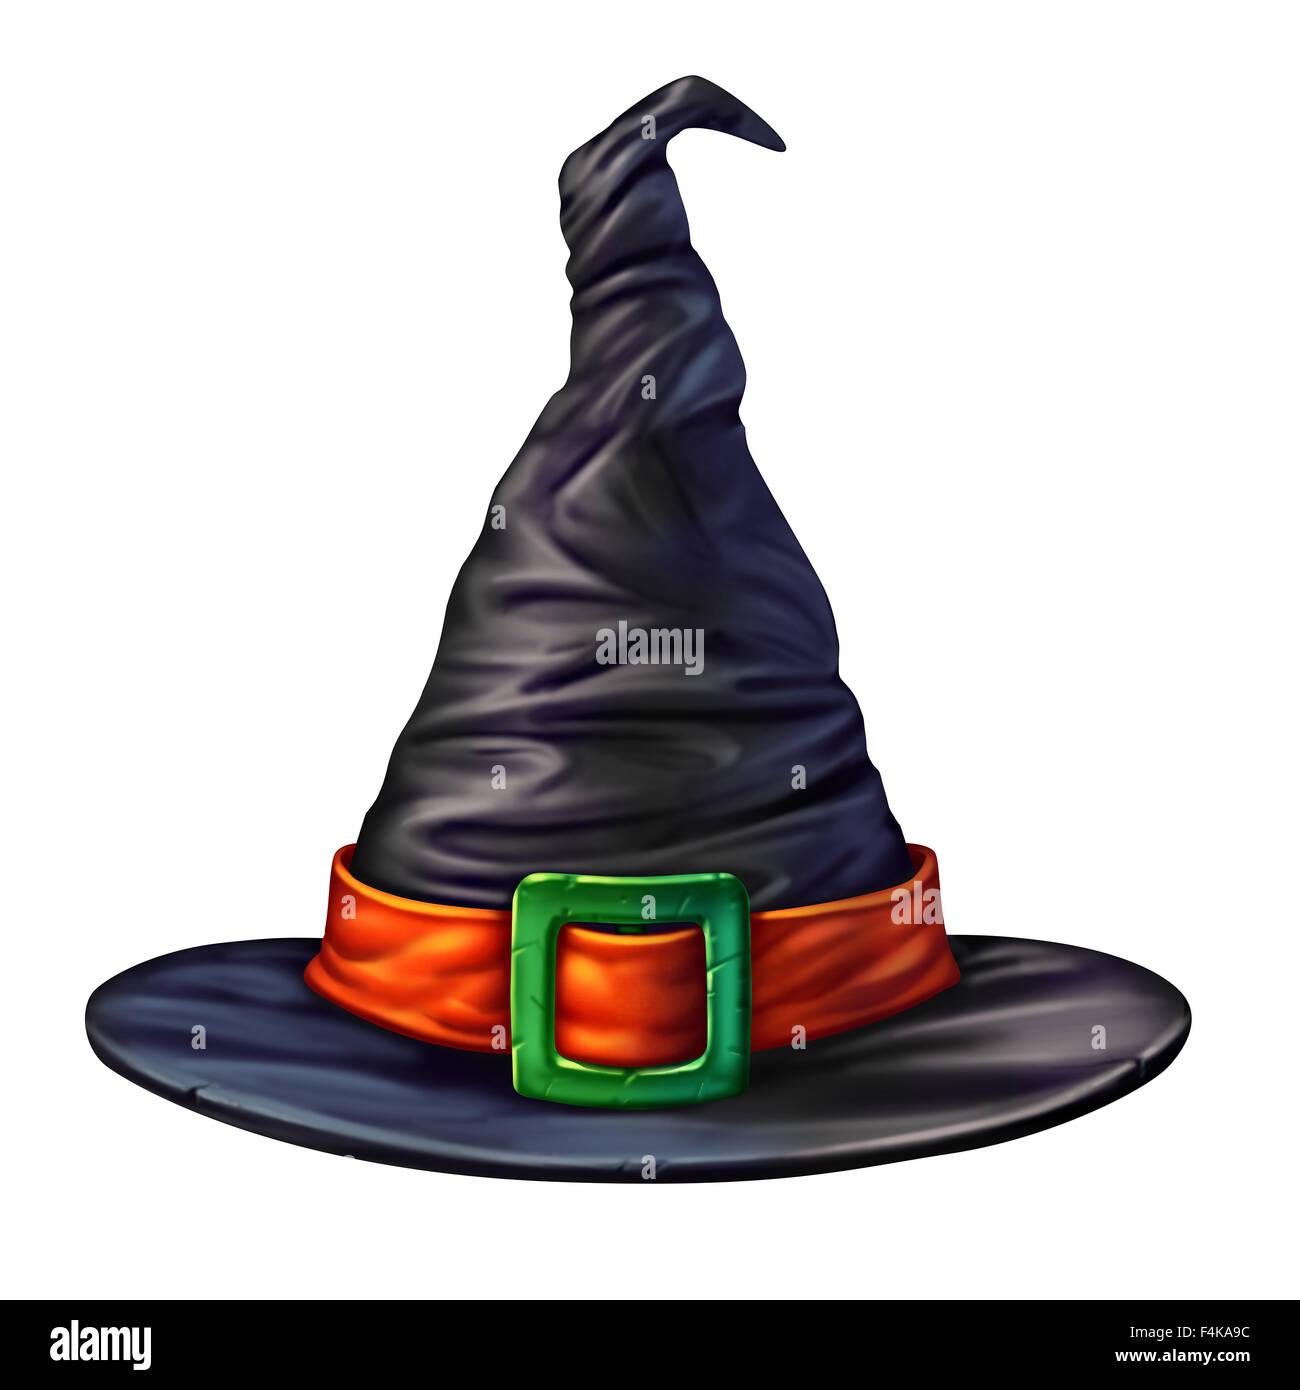 Strega hat isolato su uno sfondo bianco come un mistico spooky dimensionale testa nera indumento per uno stregone o maga halloween elemento grafico di una stagione carattere magico. Foto Stock